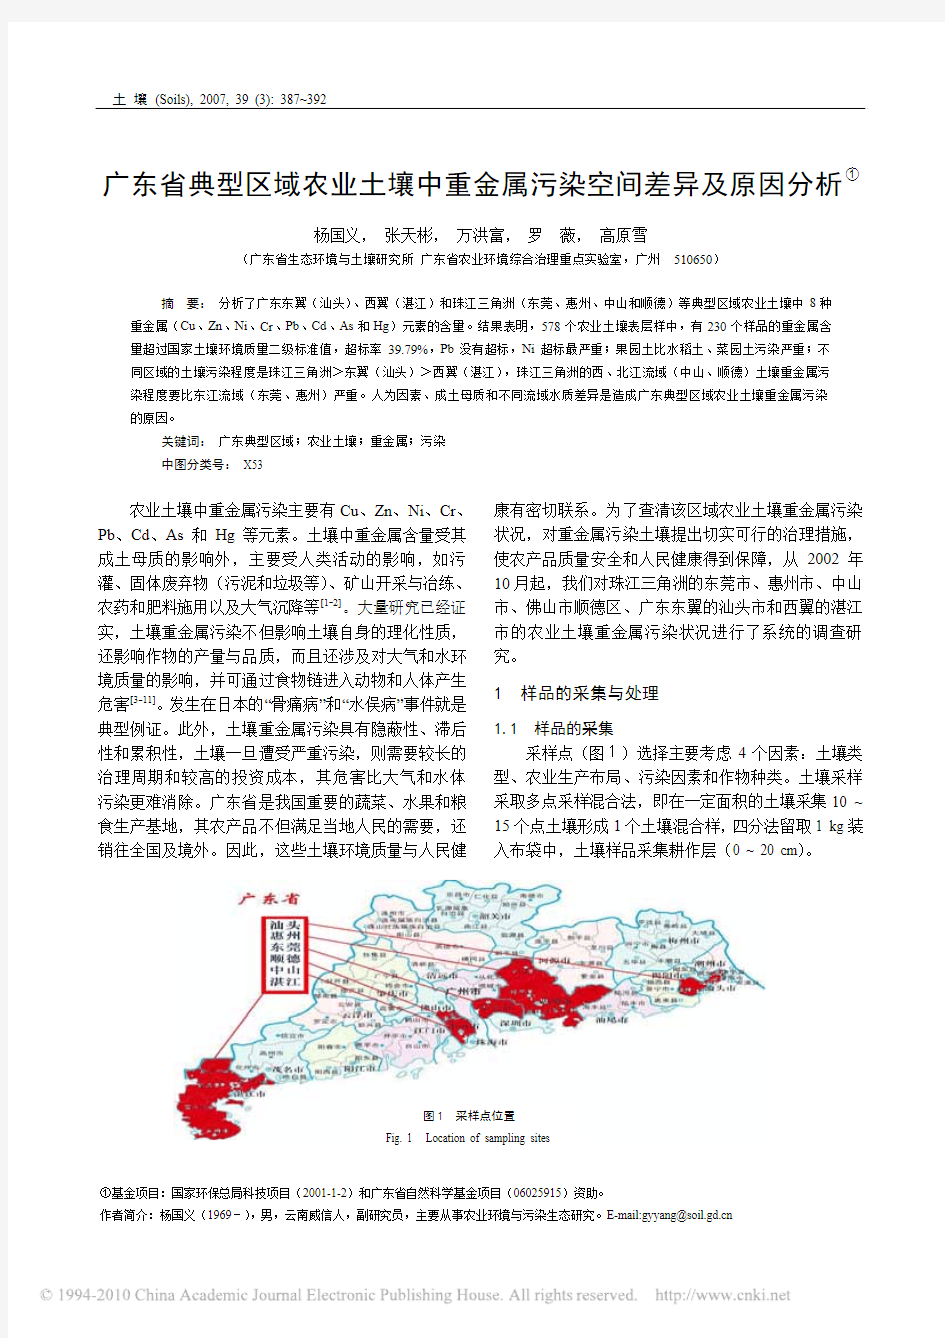 广东省典型区域农业土壤中重金属污染空间差异及原因分析